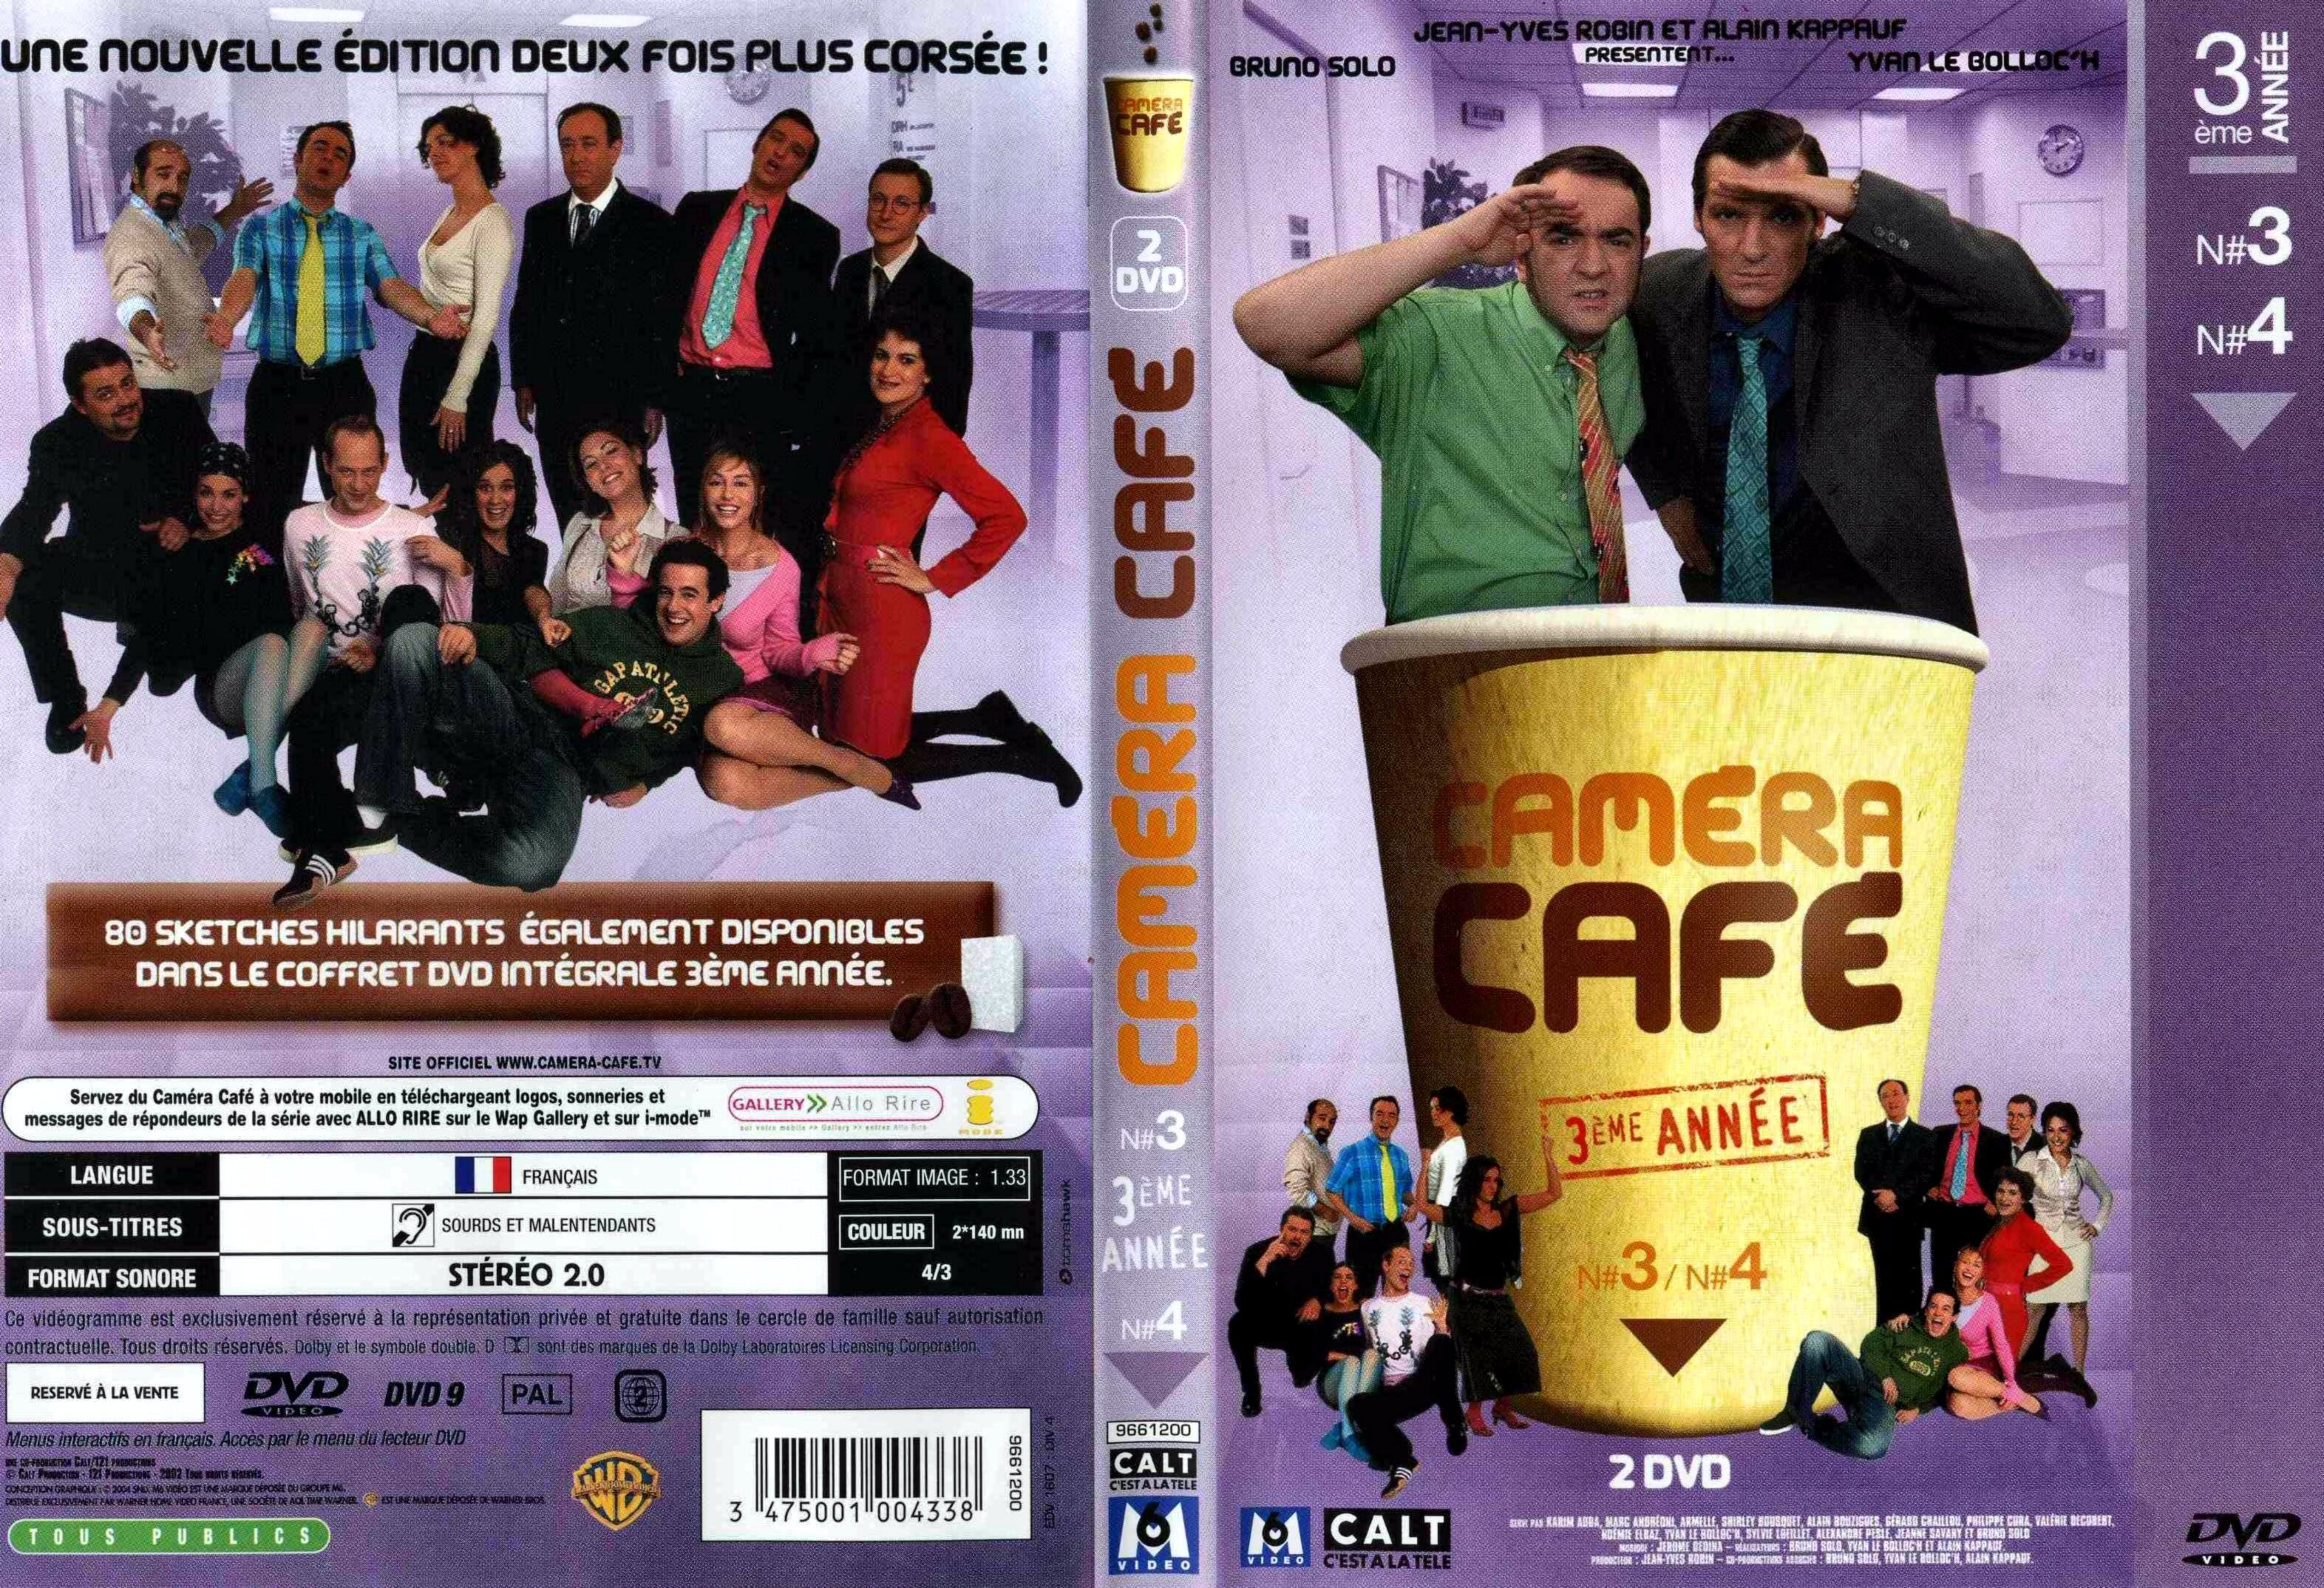 Jaquette DVD Camera Cafe saison 3 vol 3 et 4